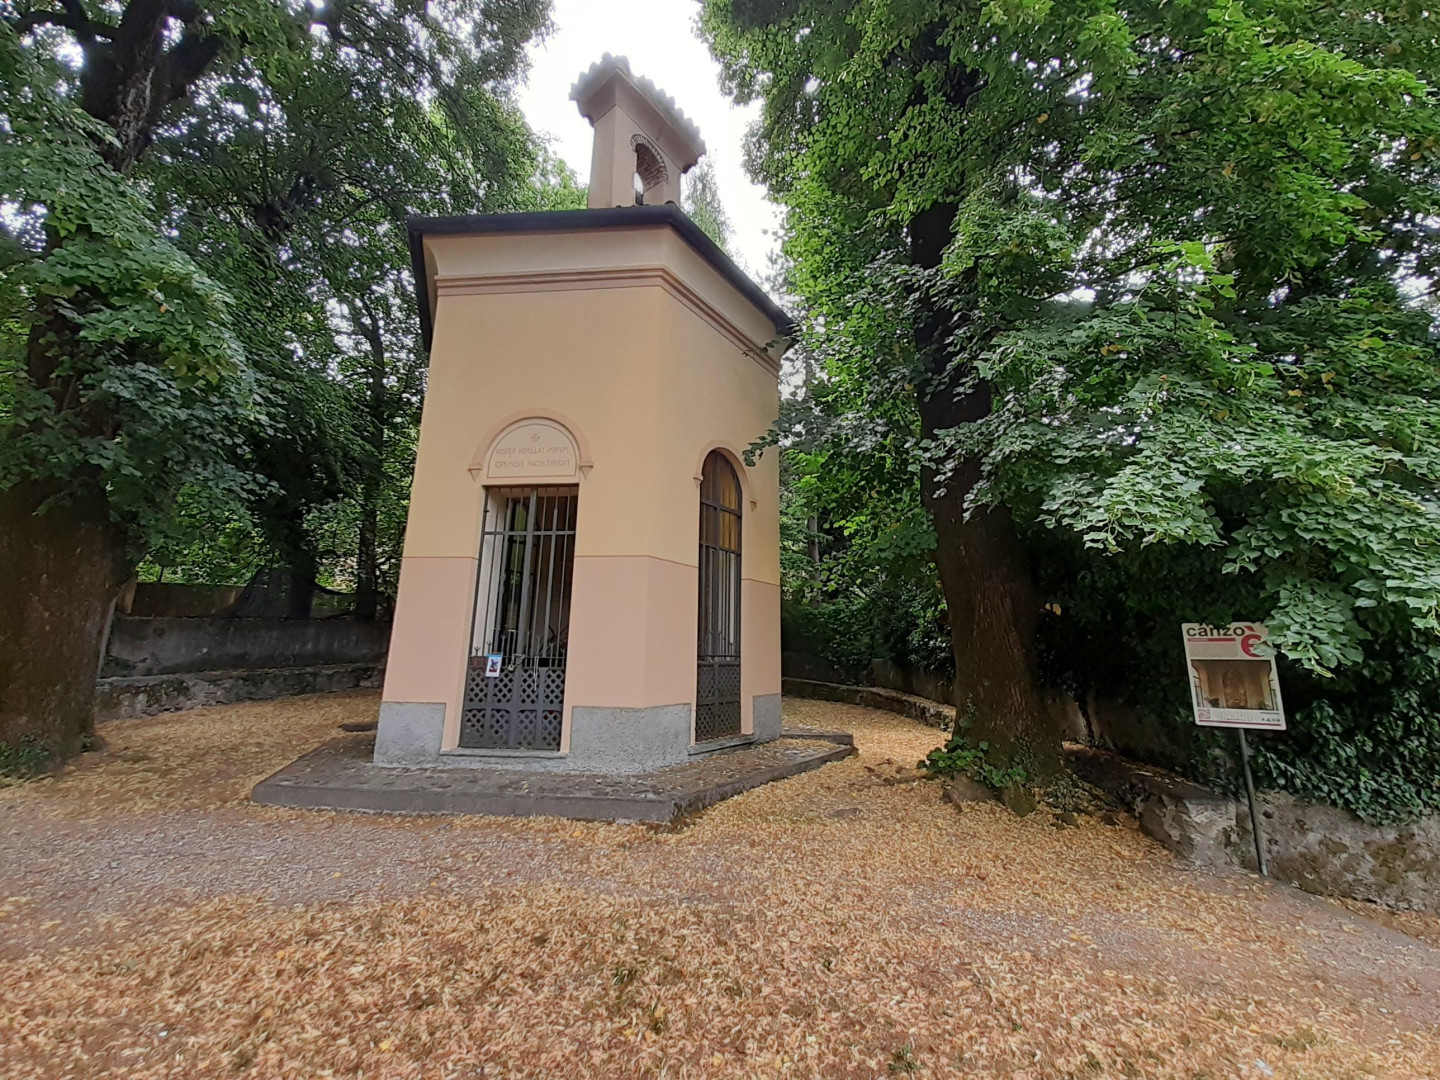 L'Oratorio di San Michele a Canzo immerso nei boschi.